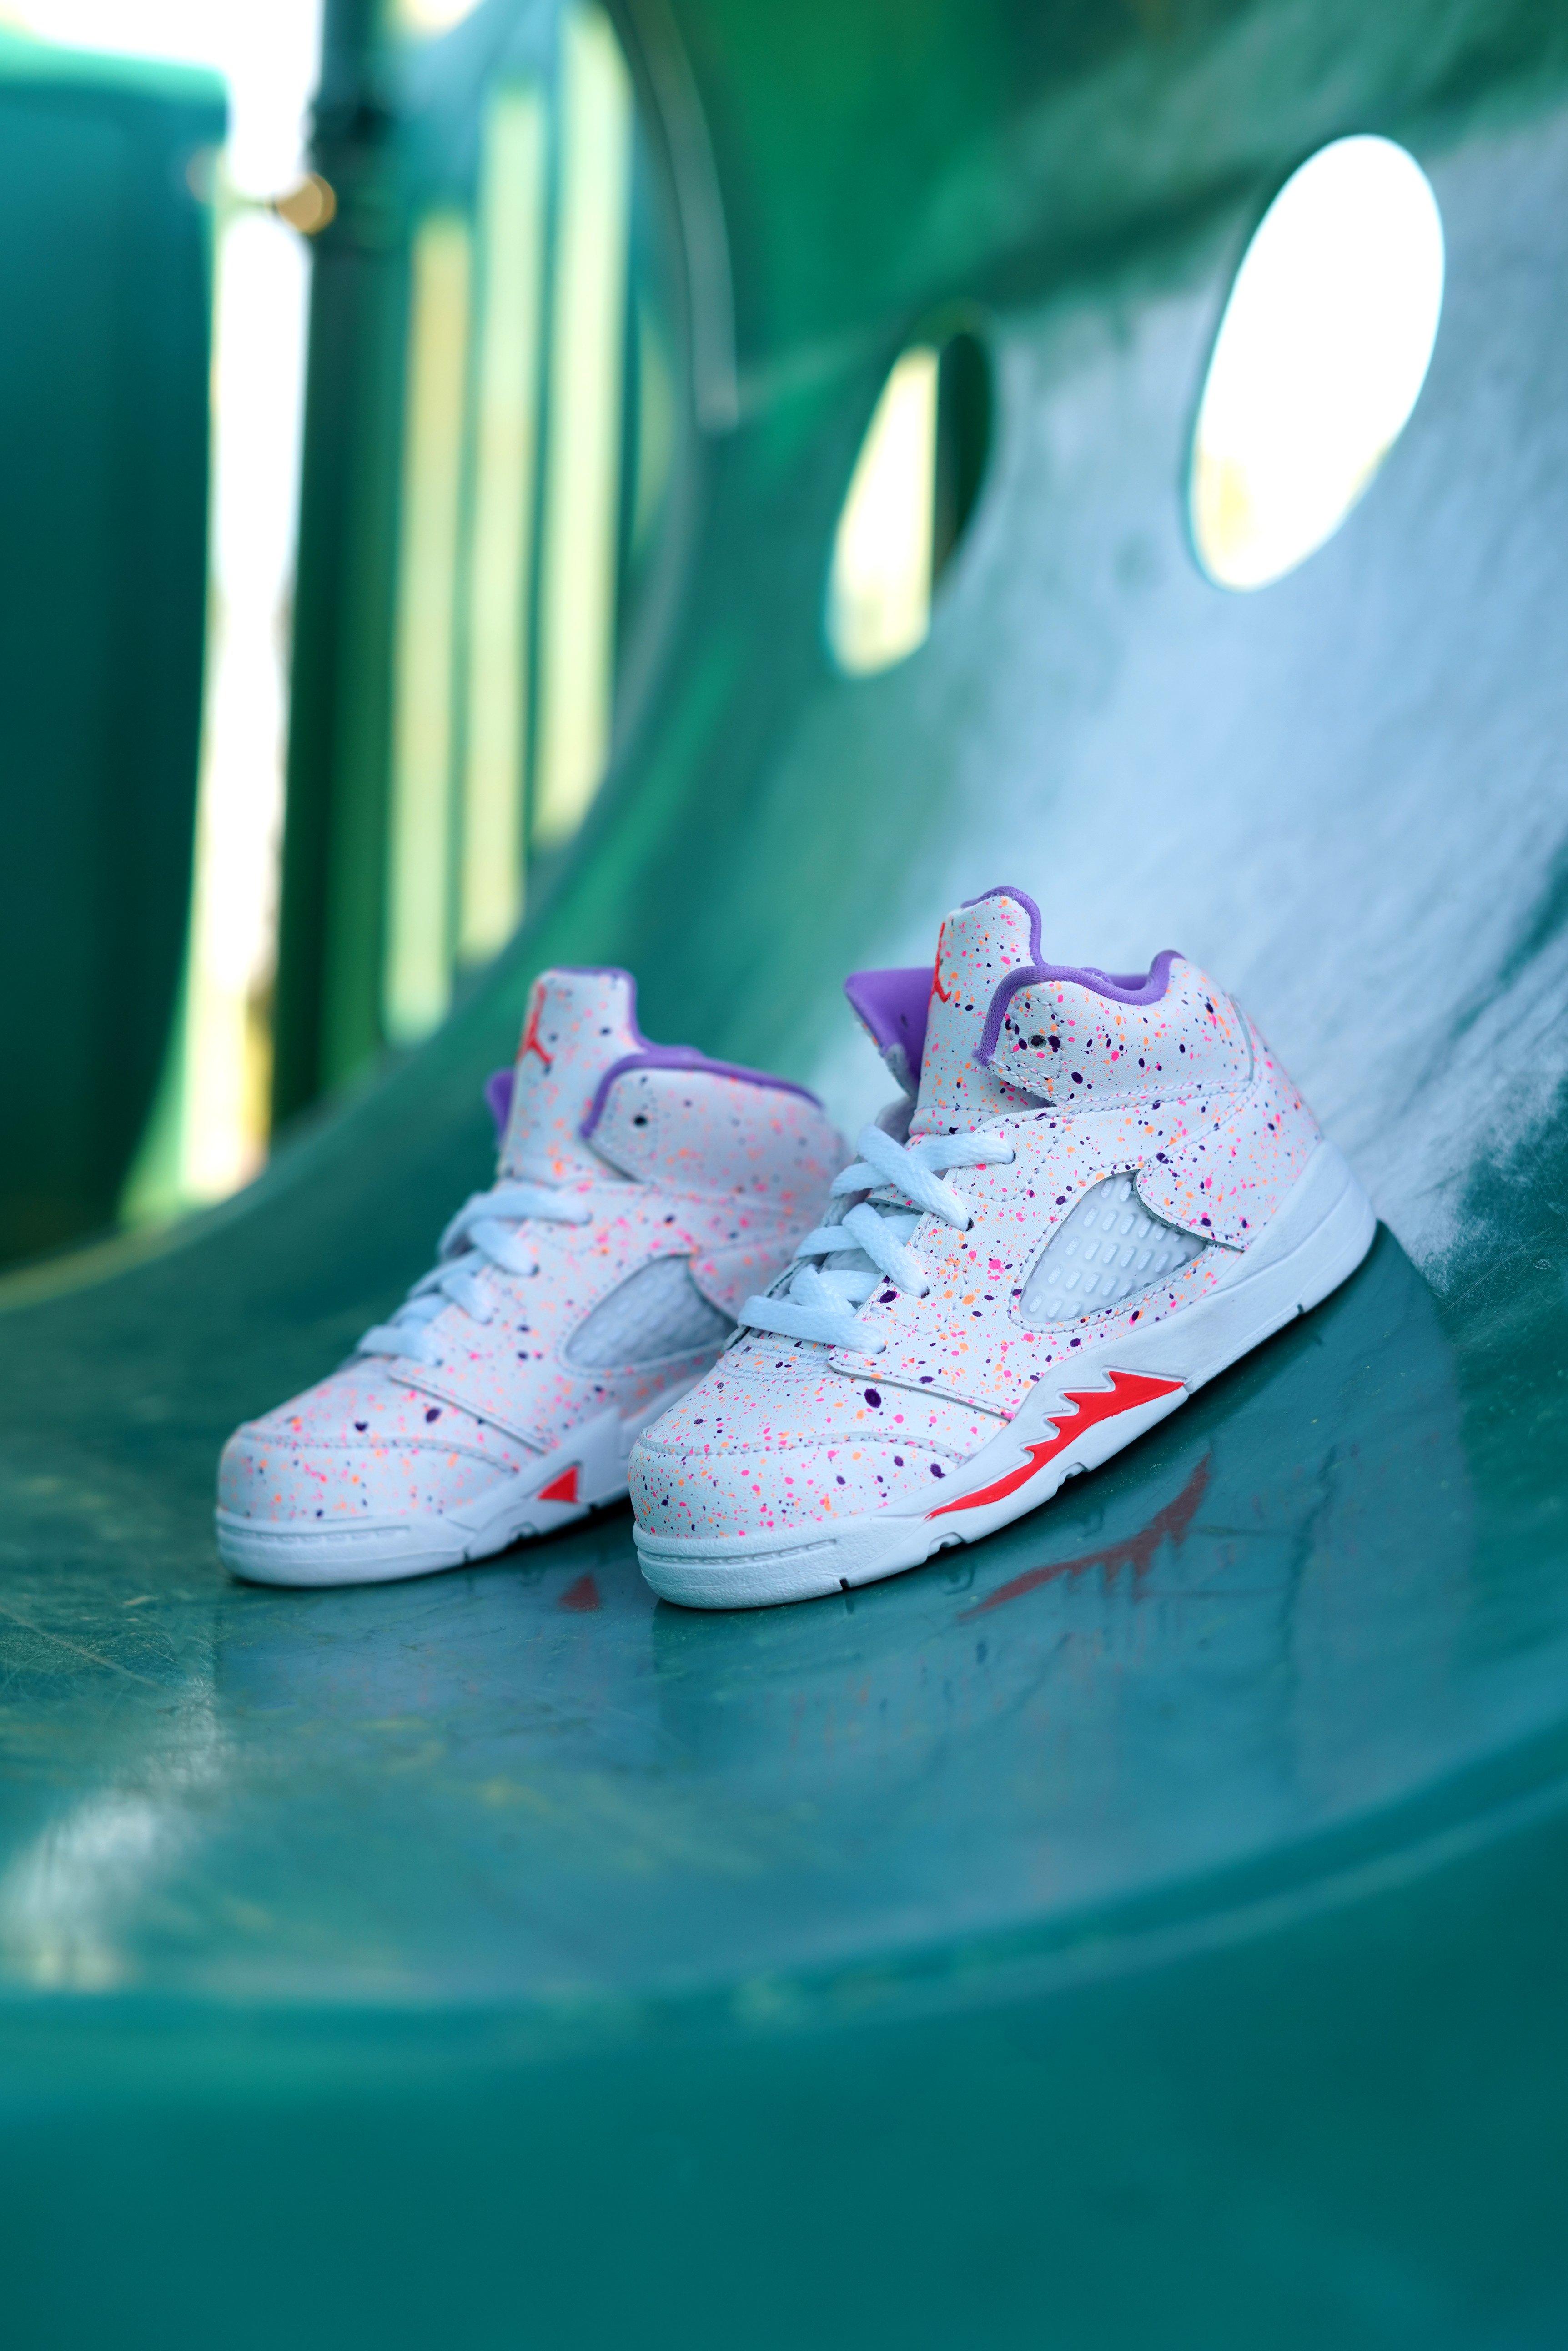 Sneakers Release – Jordan 5 Retro 